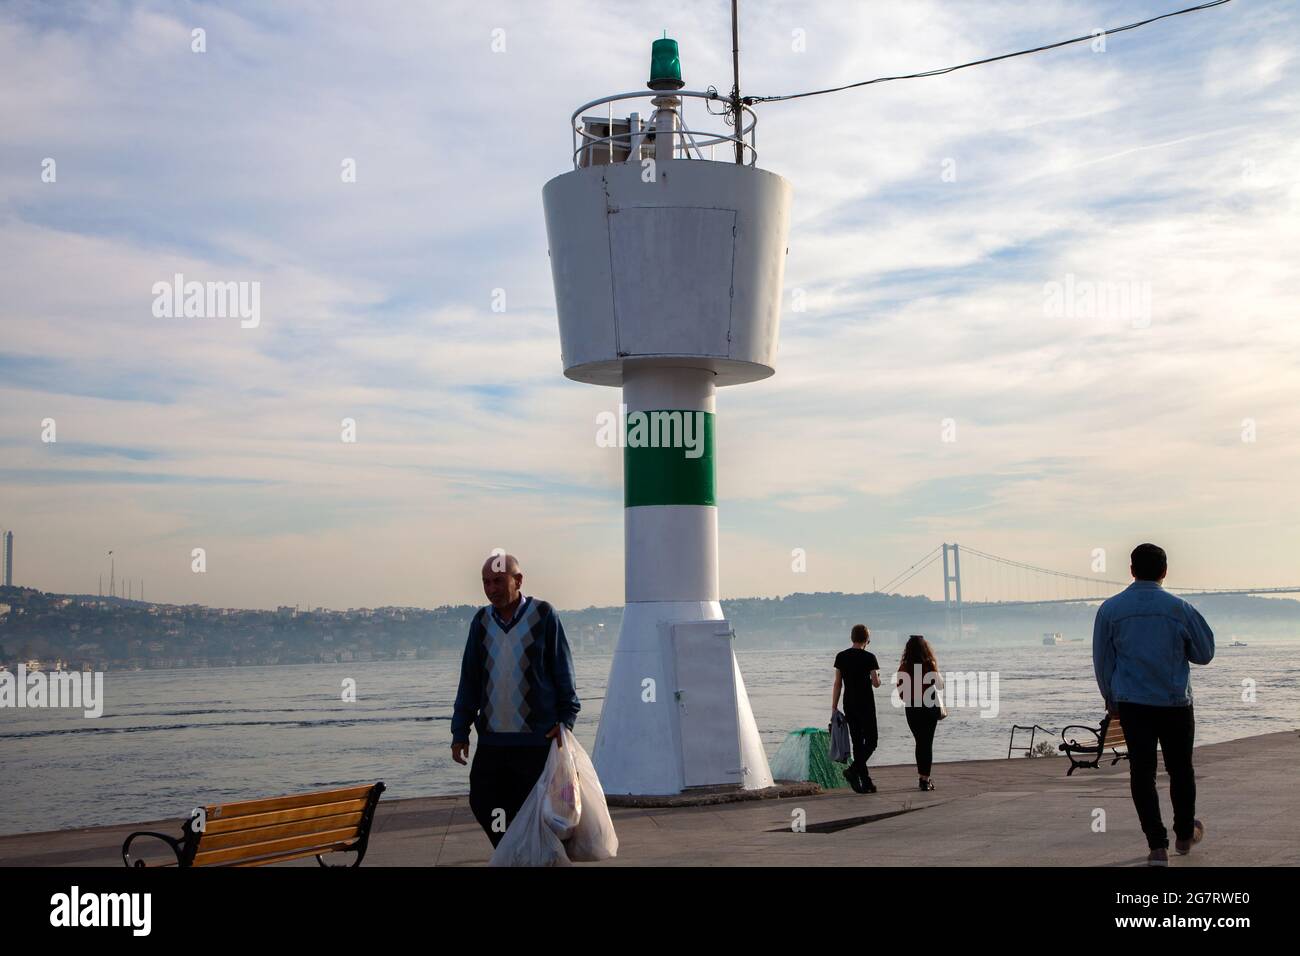 Besiktas,IstanbulTurkey - 10-23-2017:Akintiburnu lighthouse and Bosphorus view Stock Photo